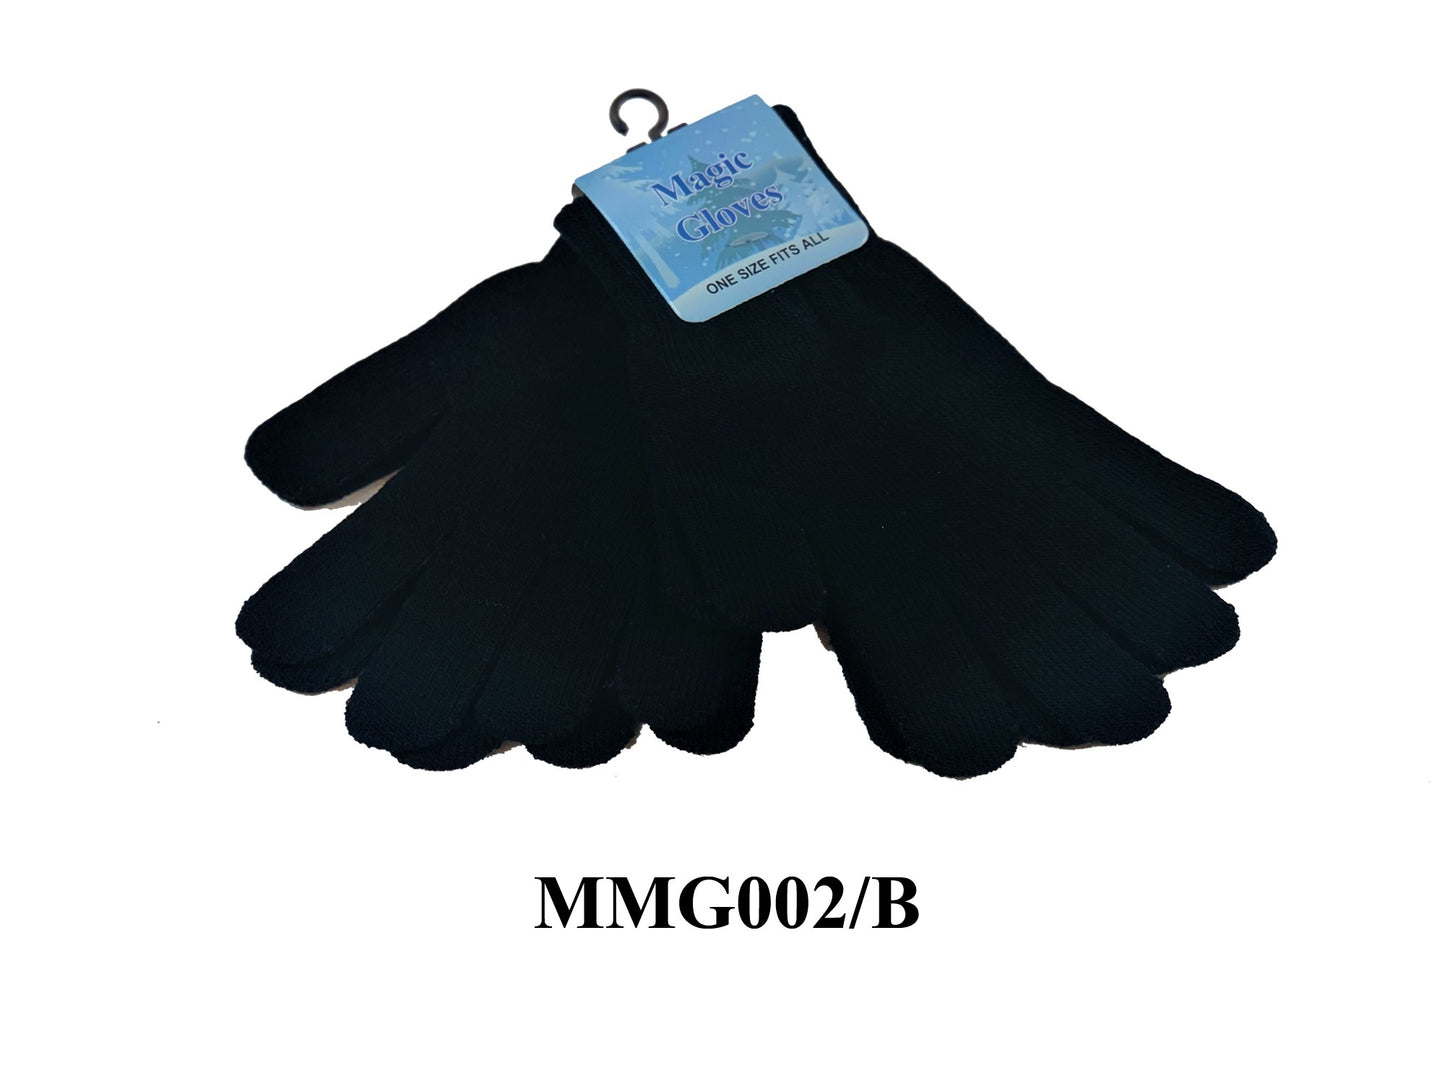 Men's Magic Glove